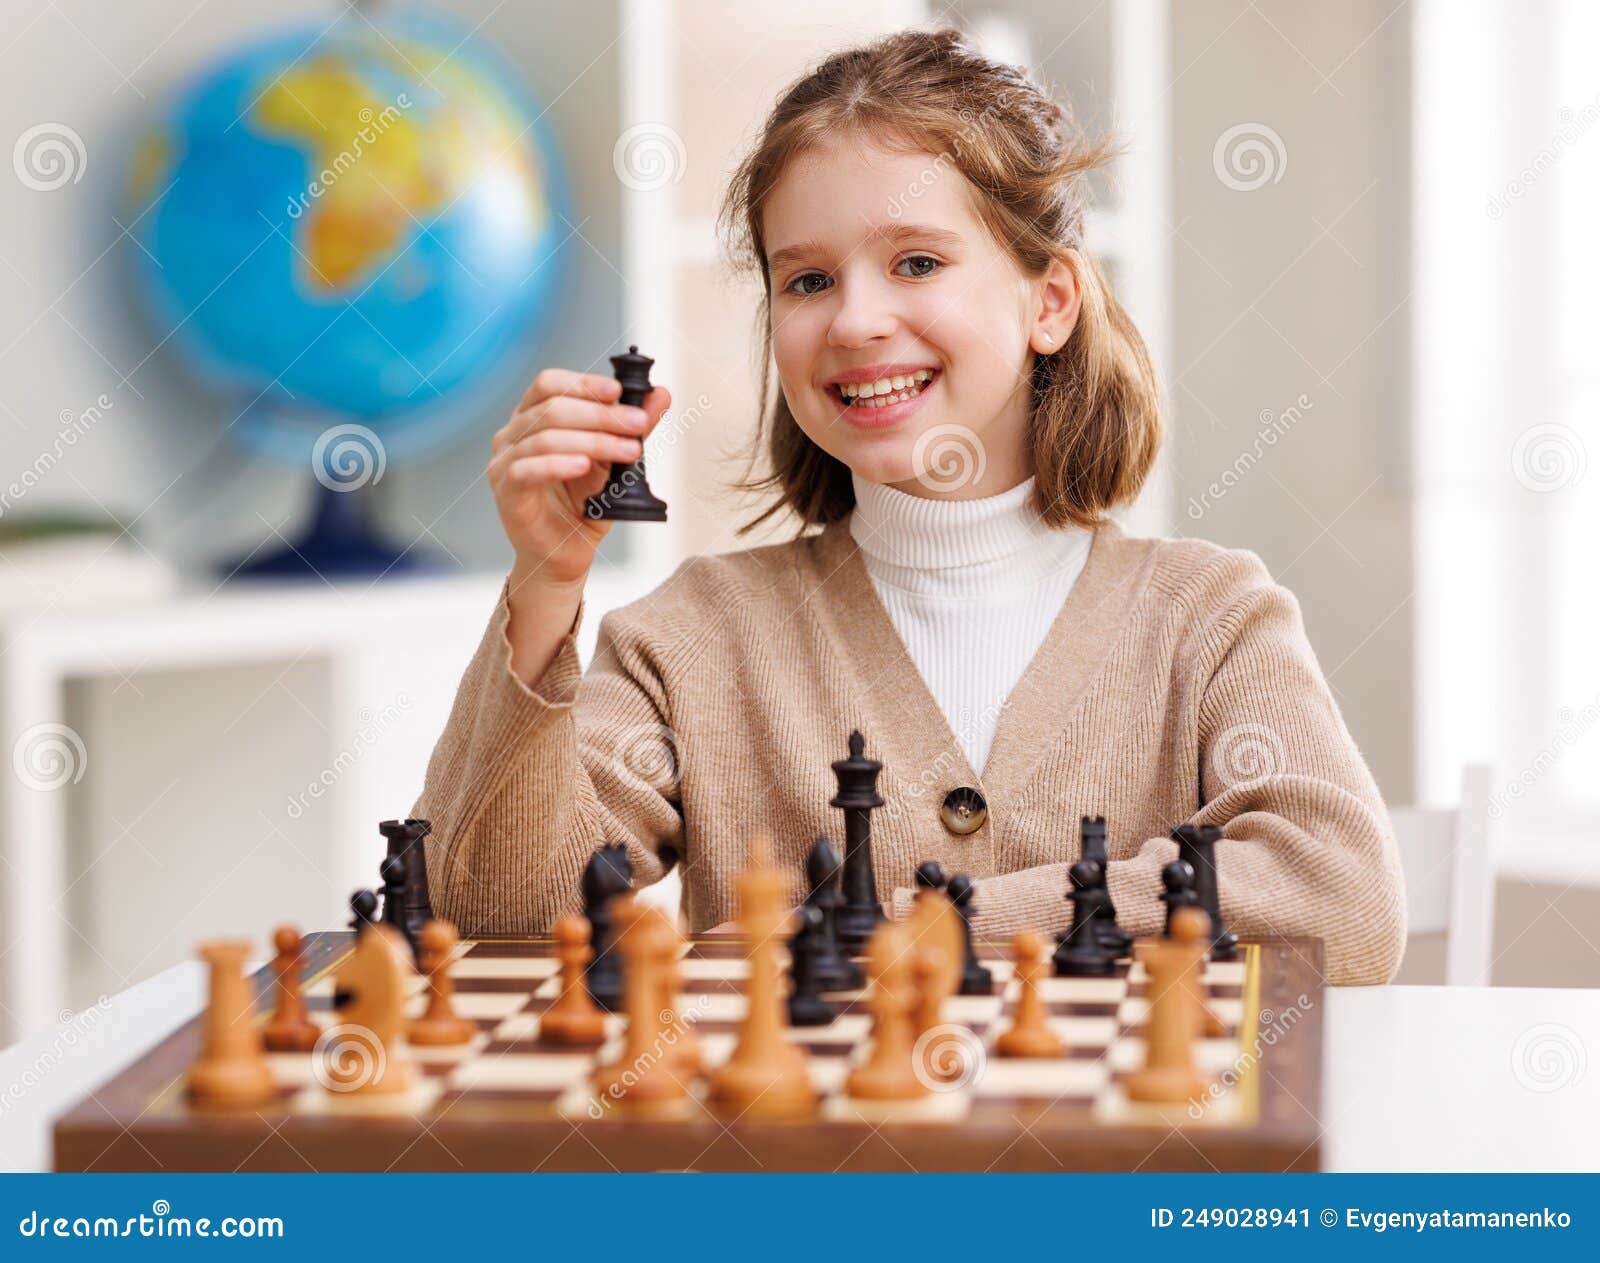 Jogando Xadrez - Aulas de Xadrez 